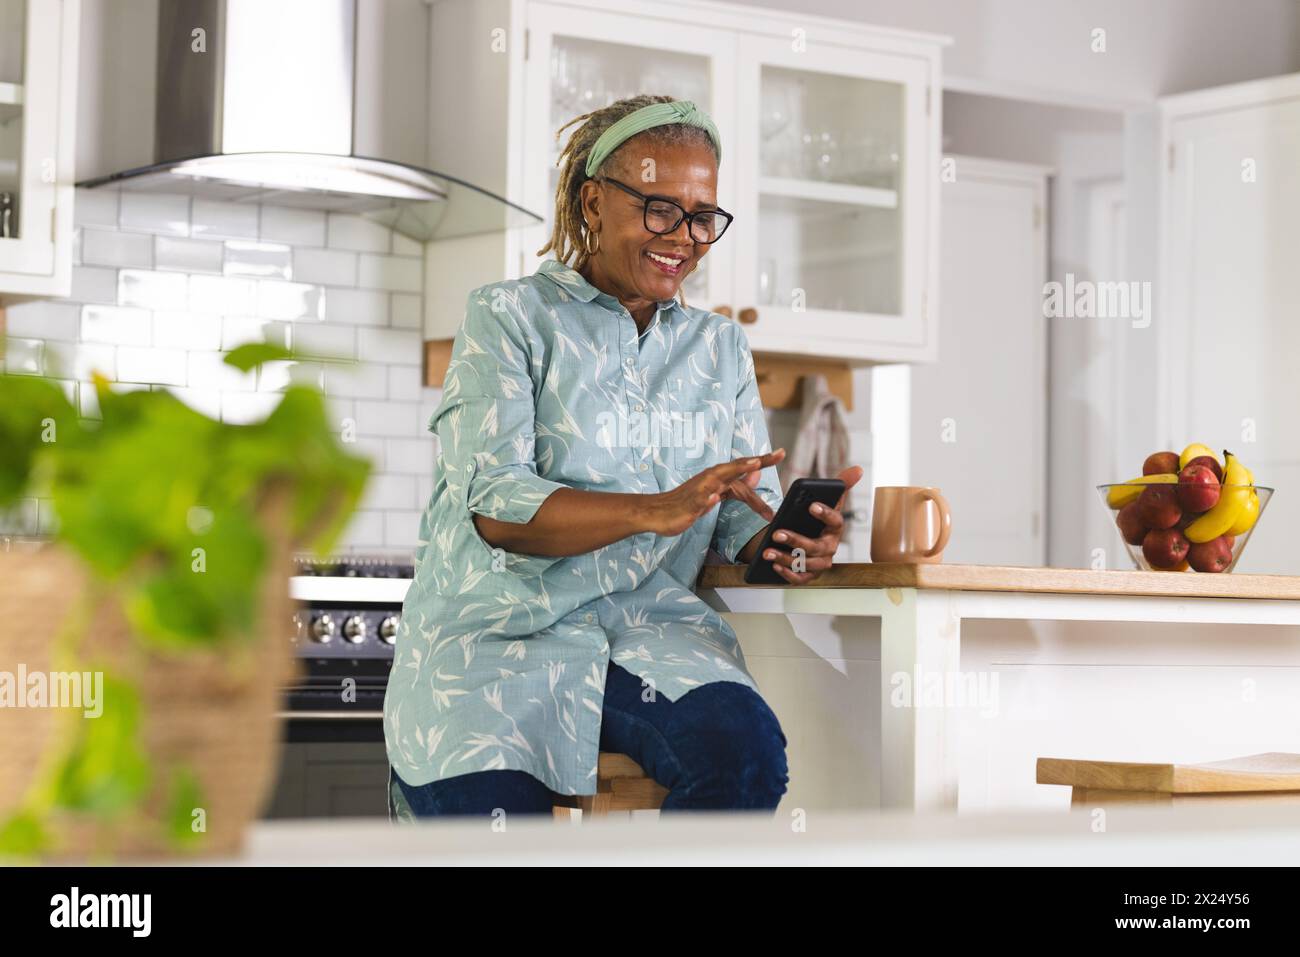 Une femme afro-américaine senior utilise un smartphone dans la cuisine à la maison, espace de copie. Elle a les cheveux gris courts, des lunettes, et porte un bleu clair Banque D'Images